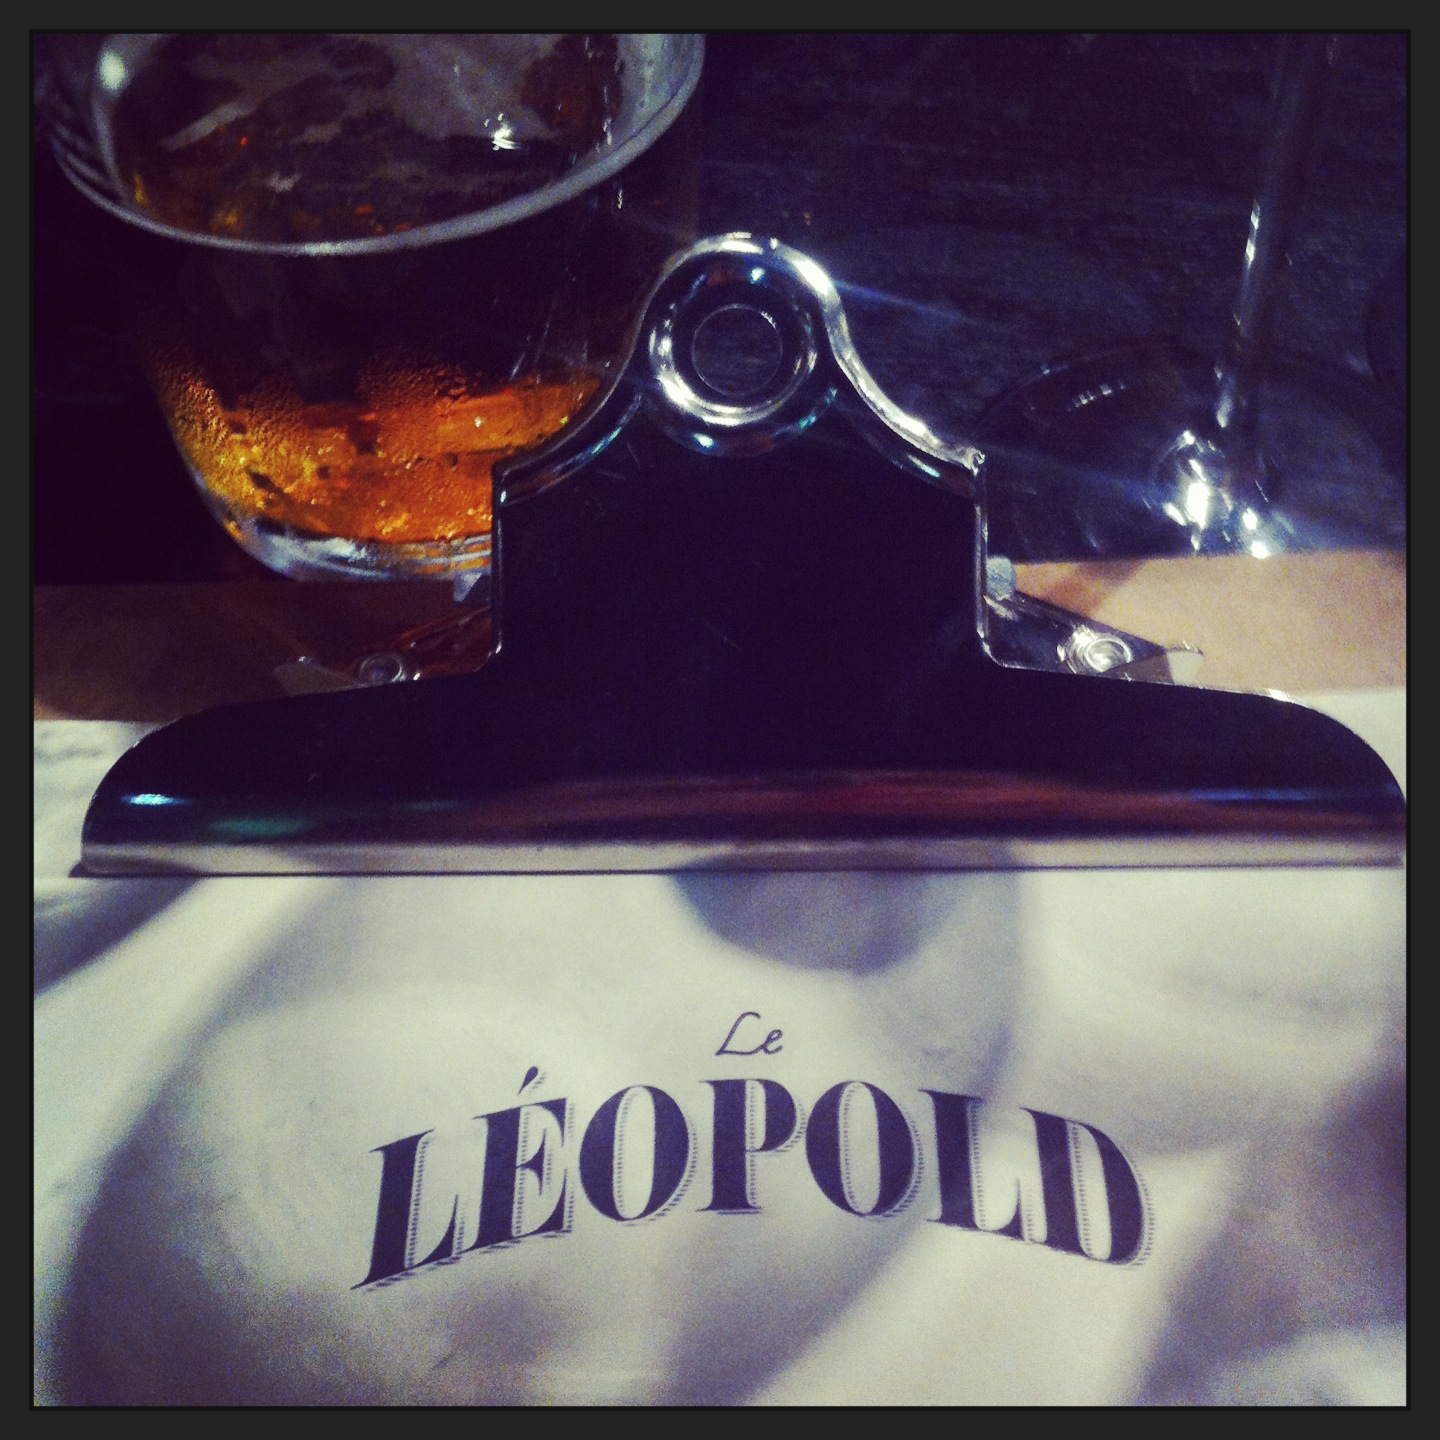 Le Leopold